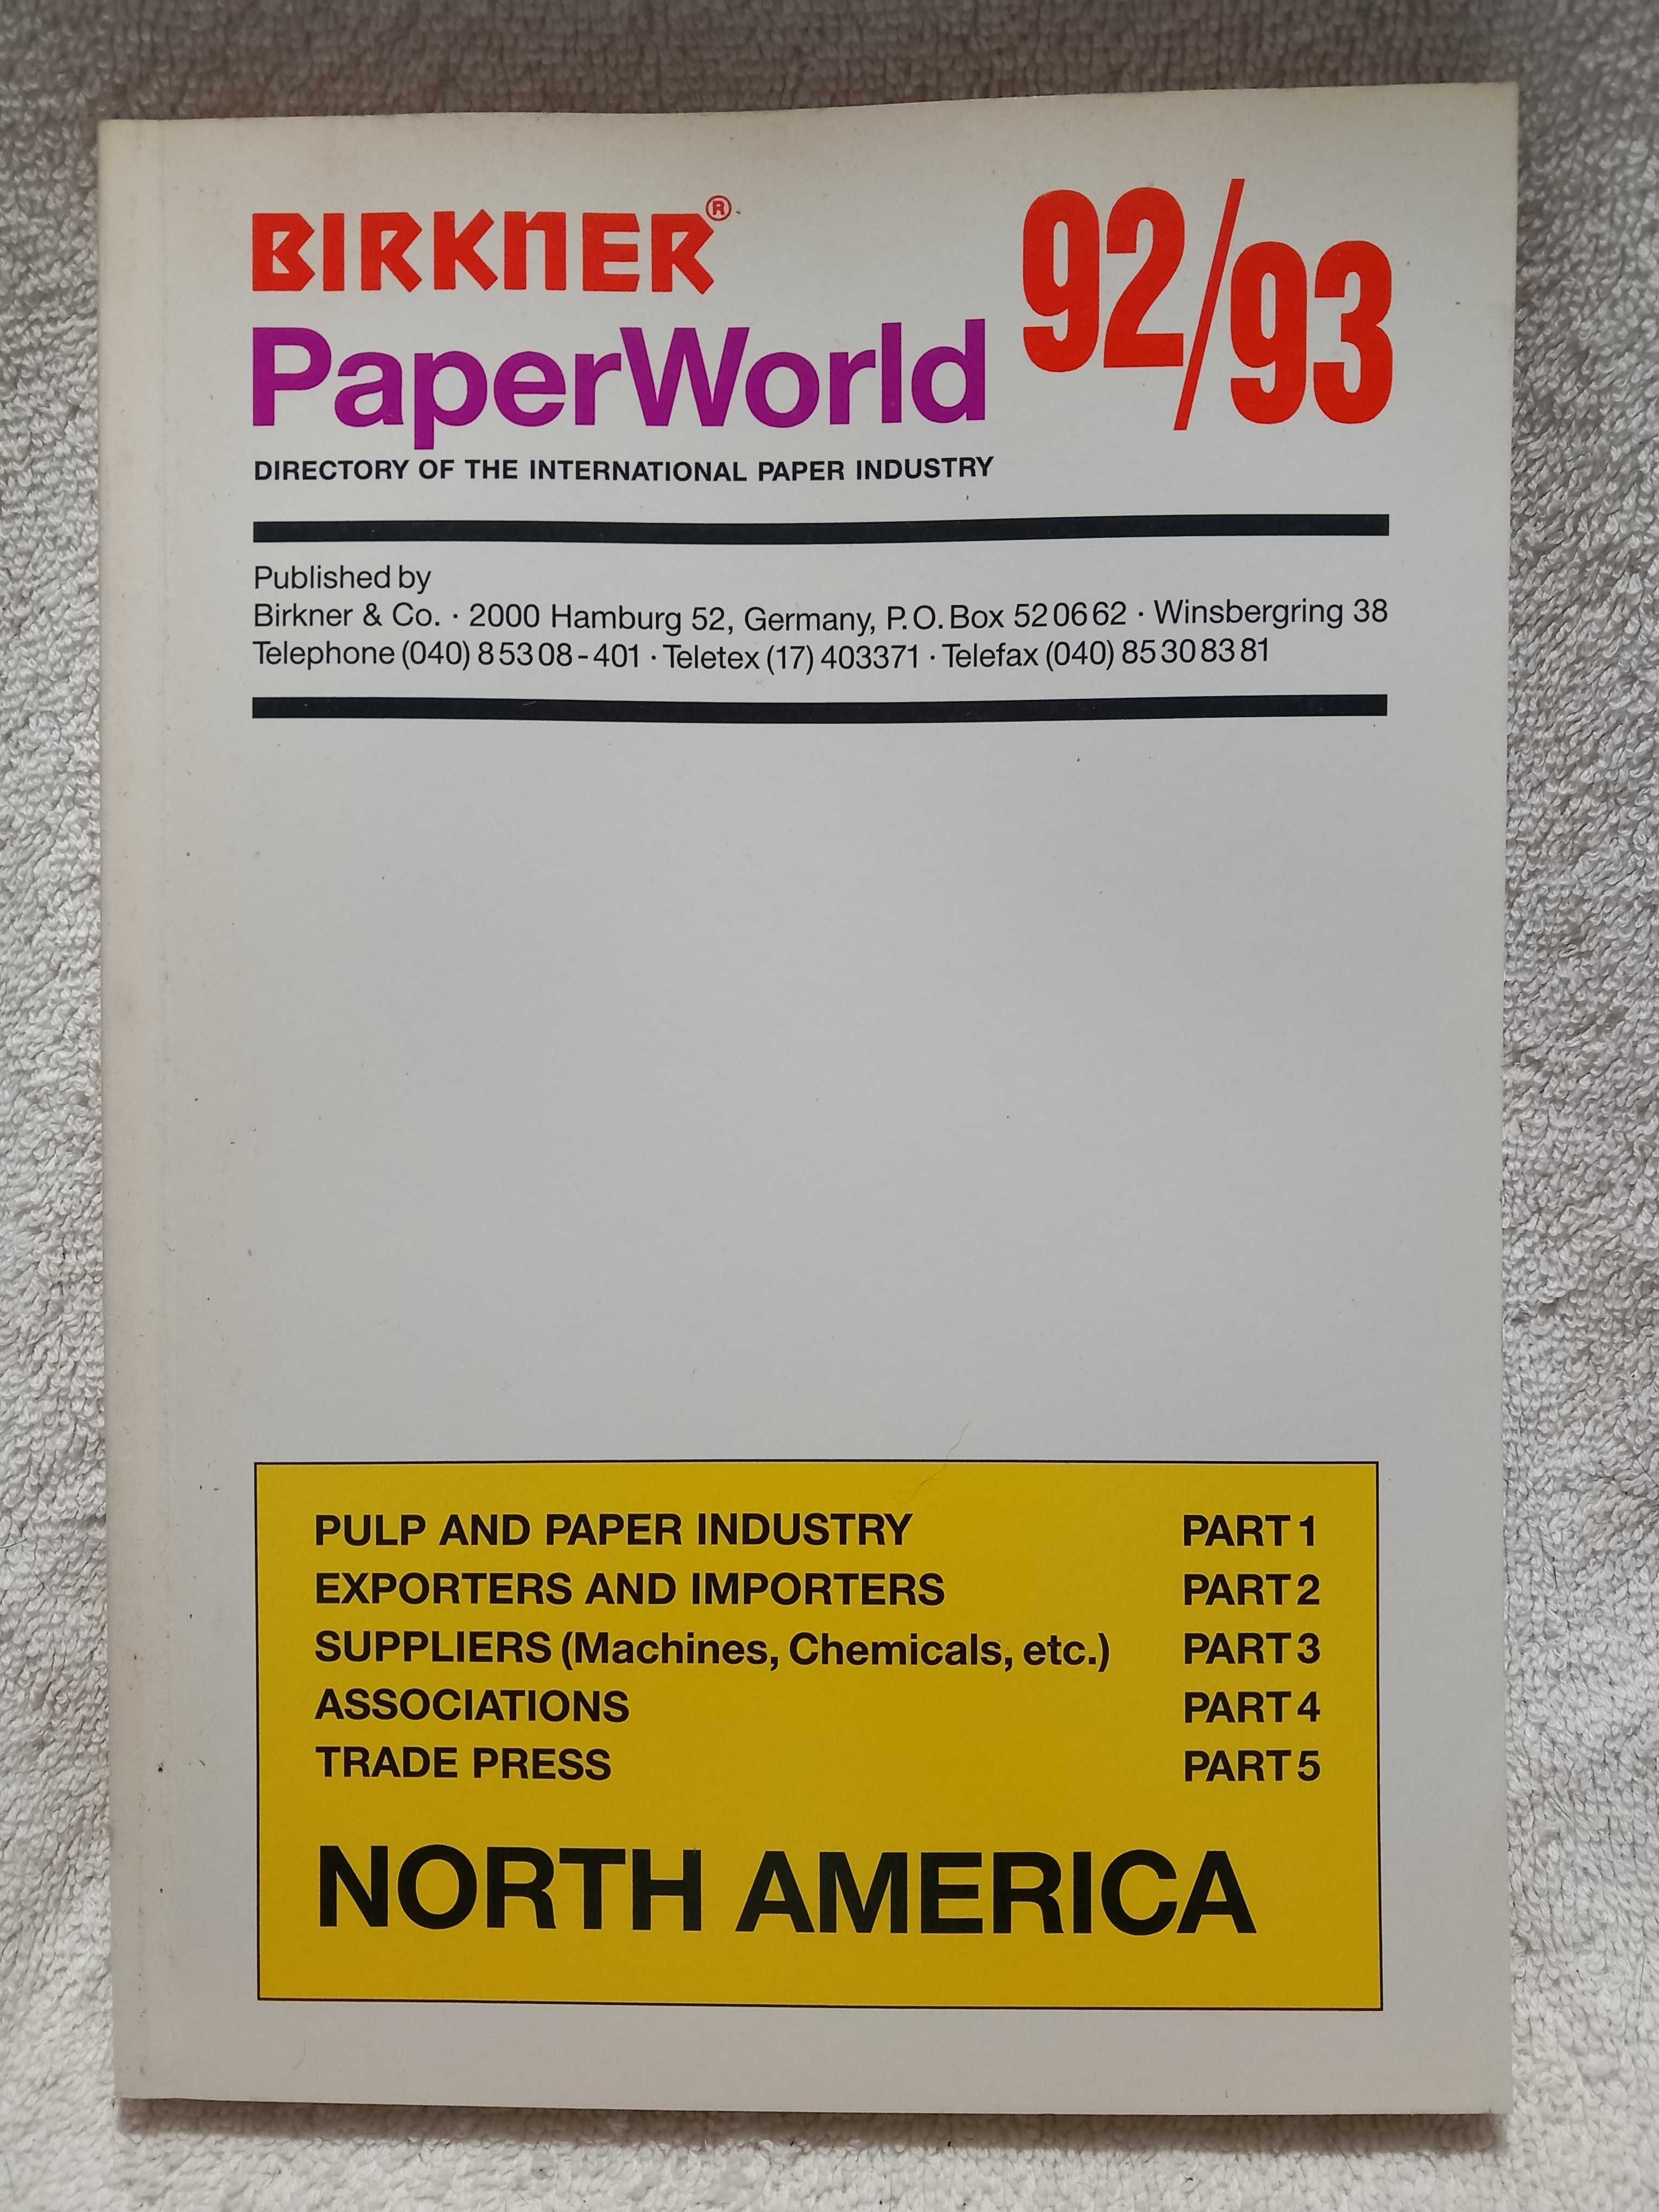 Livros, BIRKNER, PaperWorld 92, 93 Zanders (Paper, papier, perfection)